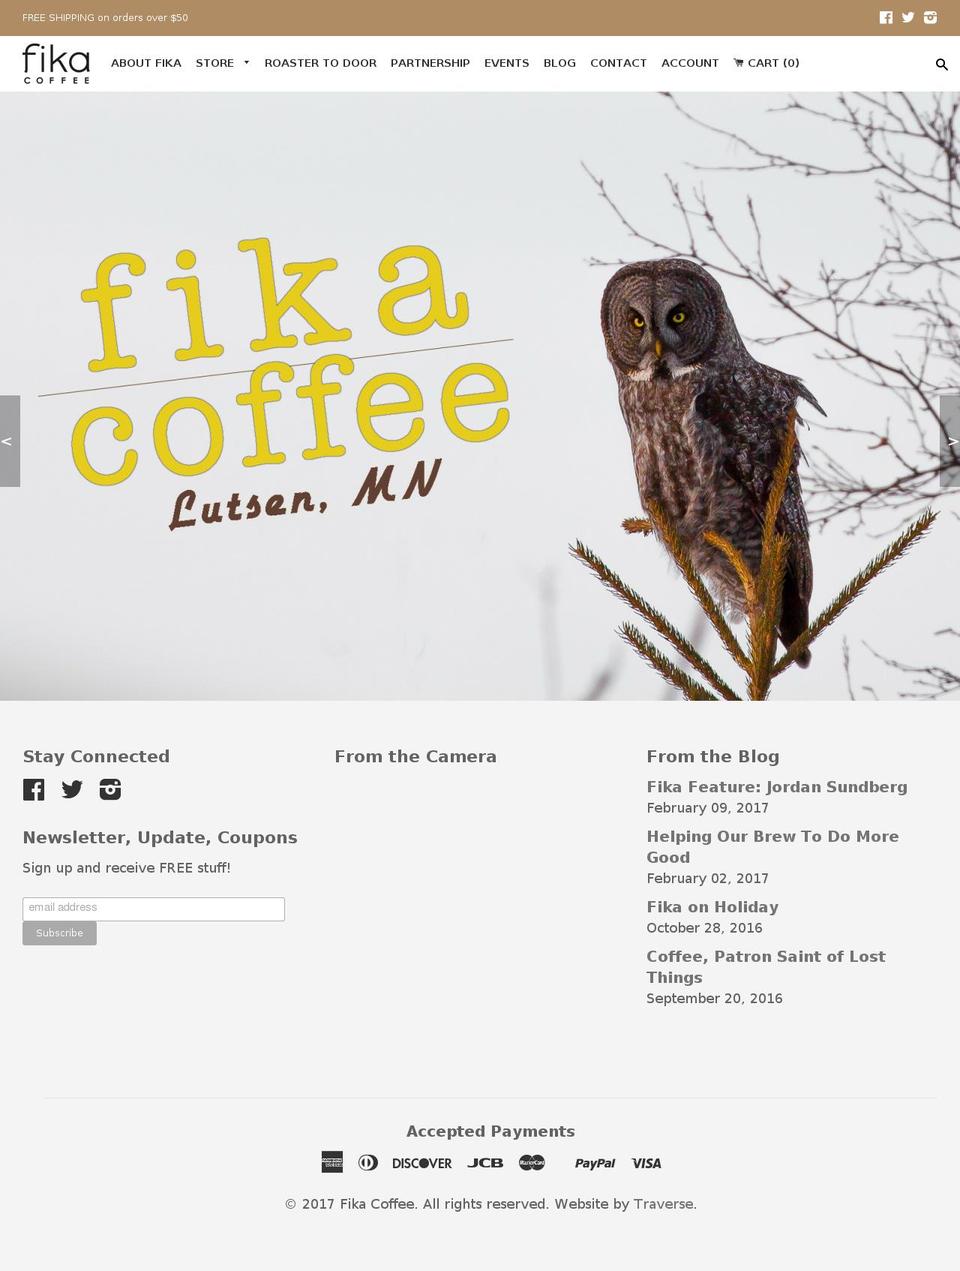 fikacoffee.com shopify website screenshot